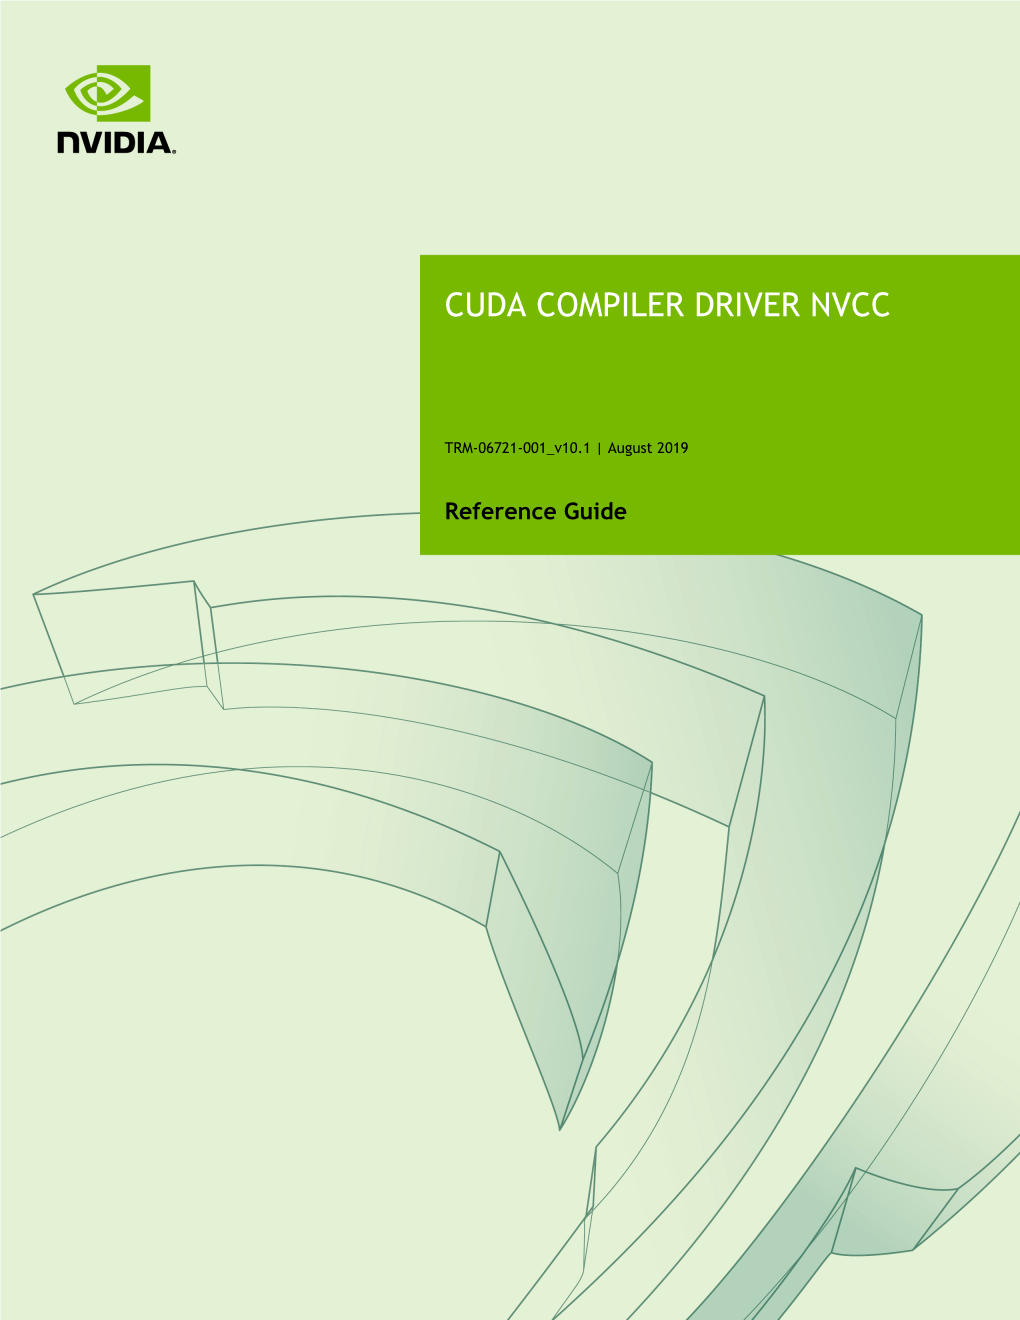 Cuda Compiler Driver Nvcc